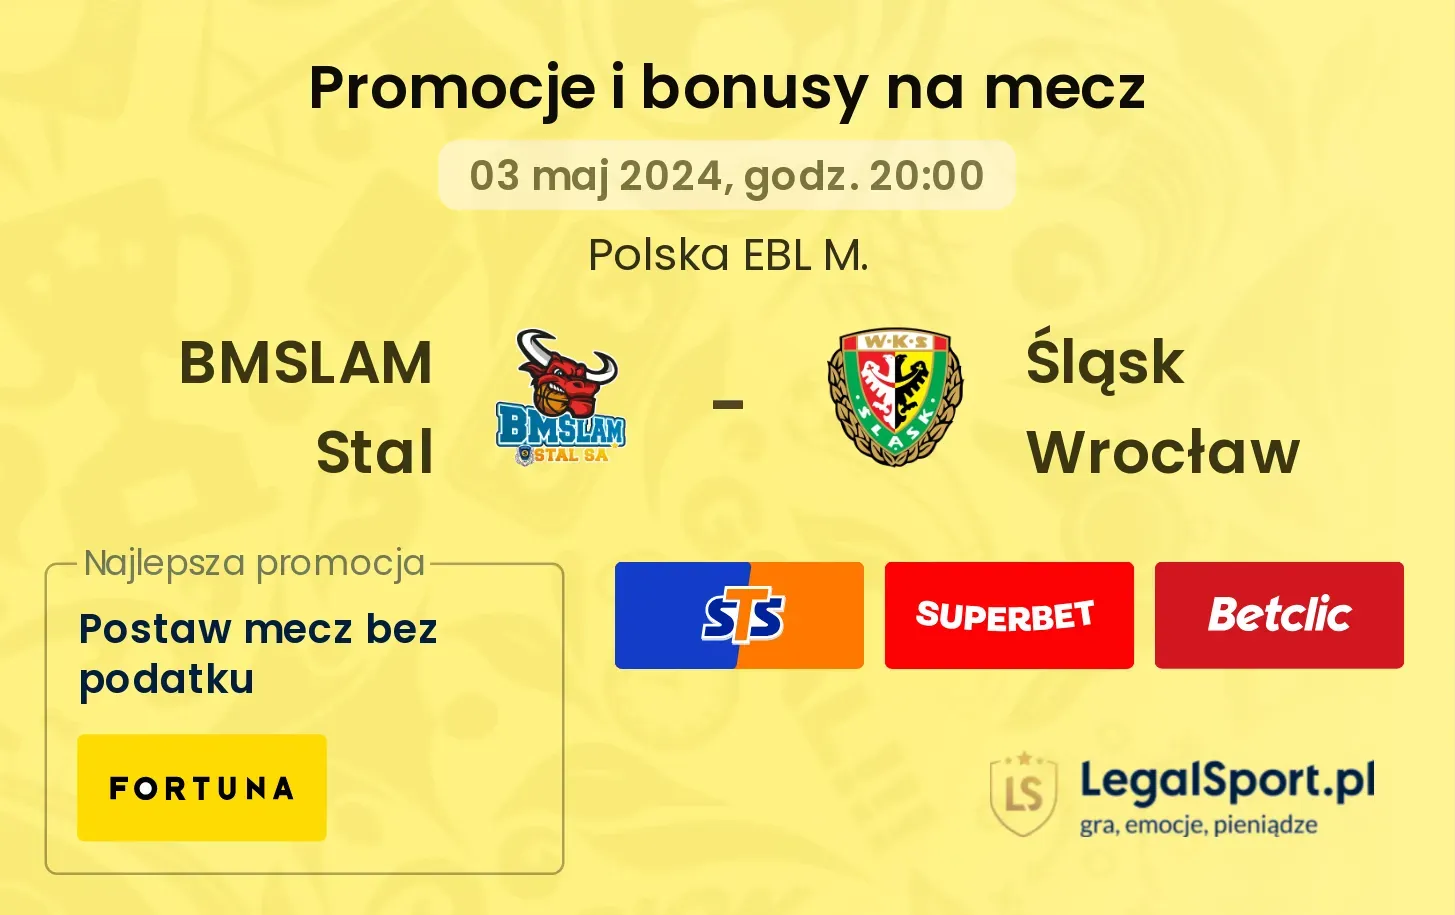 BMSLAM Stal - Śląsk Wrocław promocje i bonusy (03.05, 20:00)